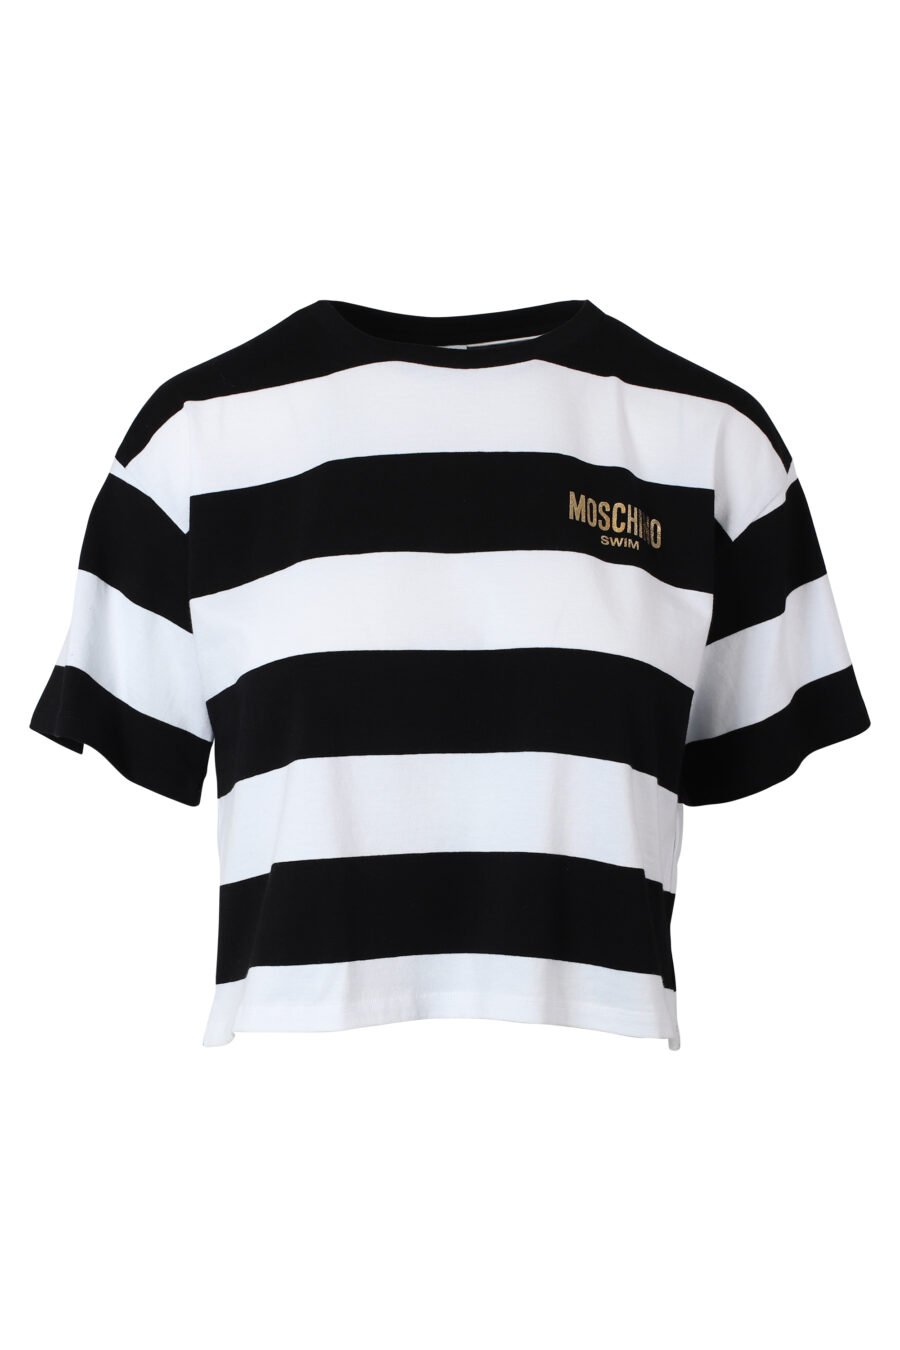 Zweifarbiges, schwarz-weiß gestreiftes T-Shirt mit goldenem Mini-Logo - IMG 9797